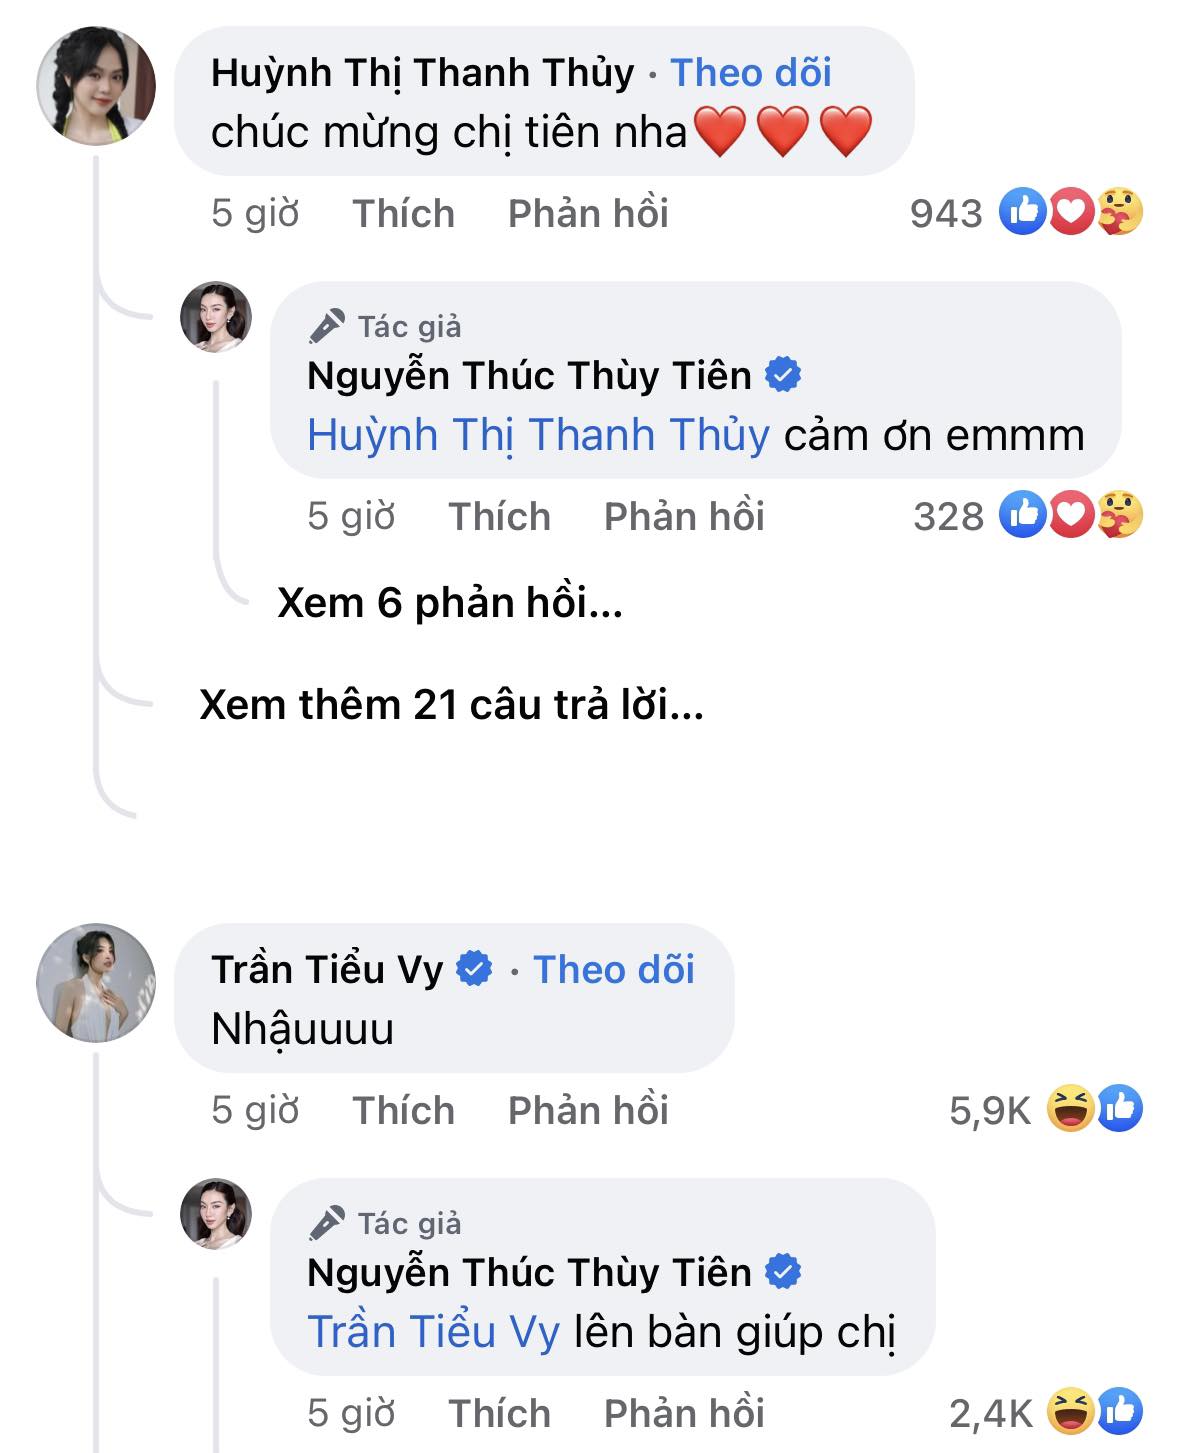 Sau khi Hoa hậu Thùy Tiên thắng kiện, nghệ sĩ Vbiz có những phản ứng thế nào? - Ảnh 5